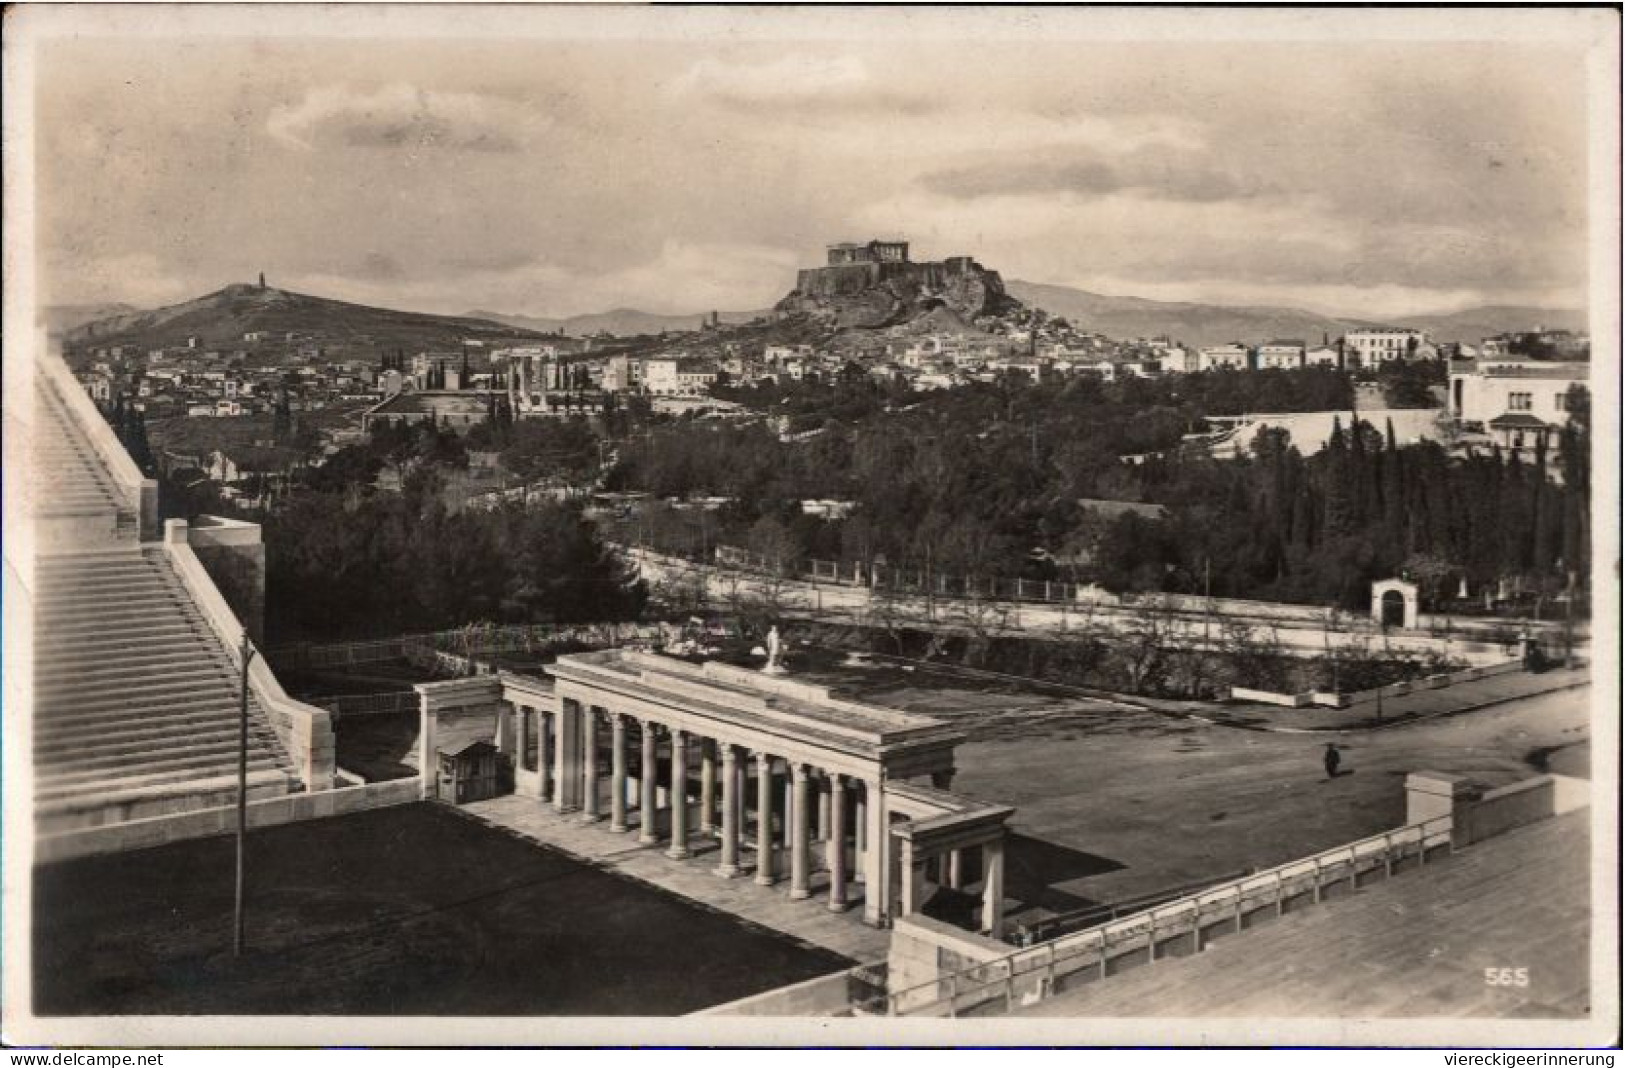 ! 1928 Ansichtskarte, Athen, Stadion, Stadium, Griechenland, Greece - Stadien